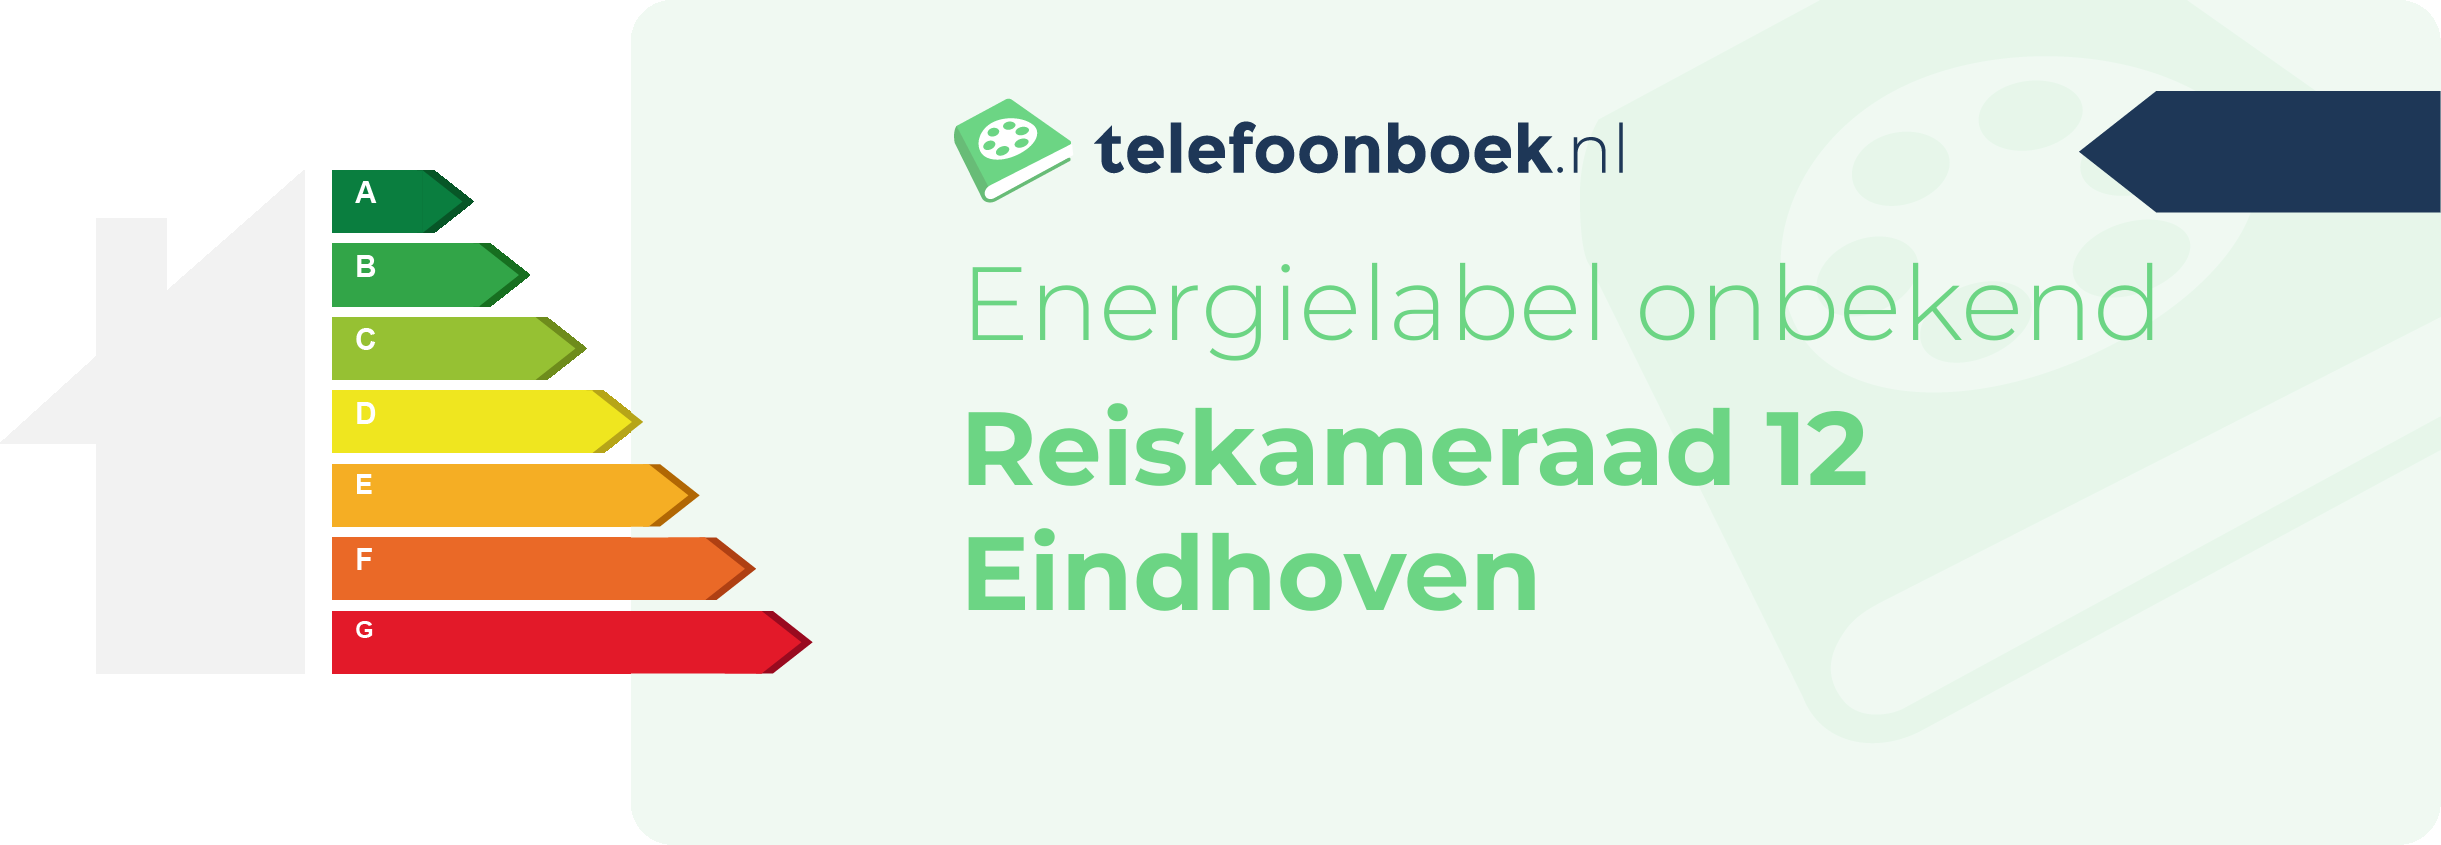 Energielabel Reiskameraad 12 Eindhoven